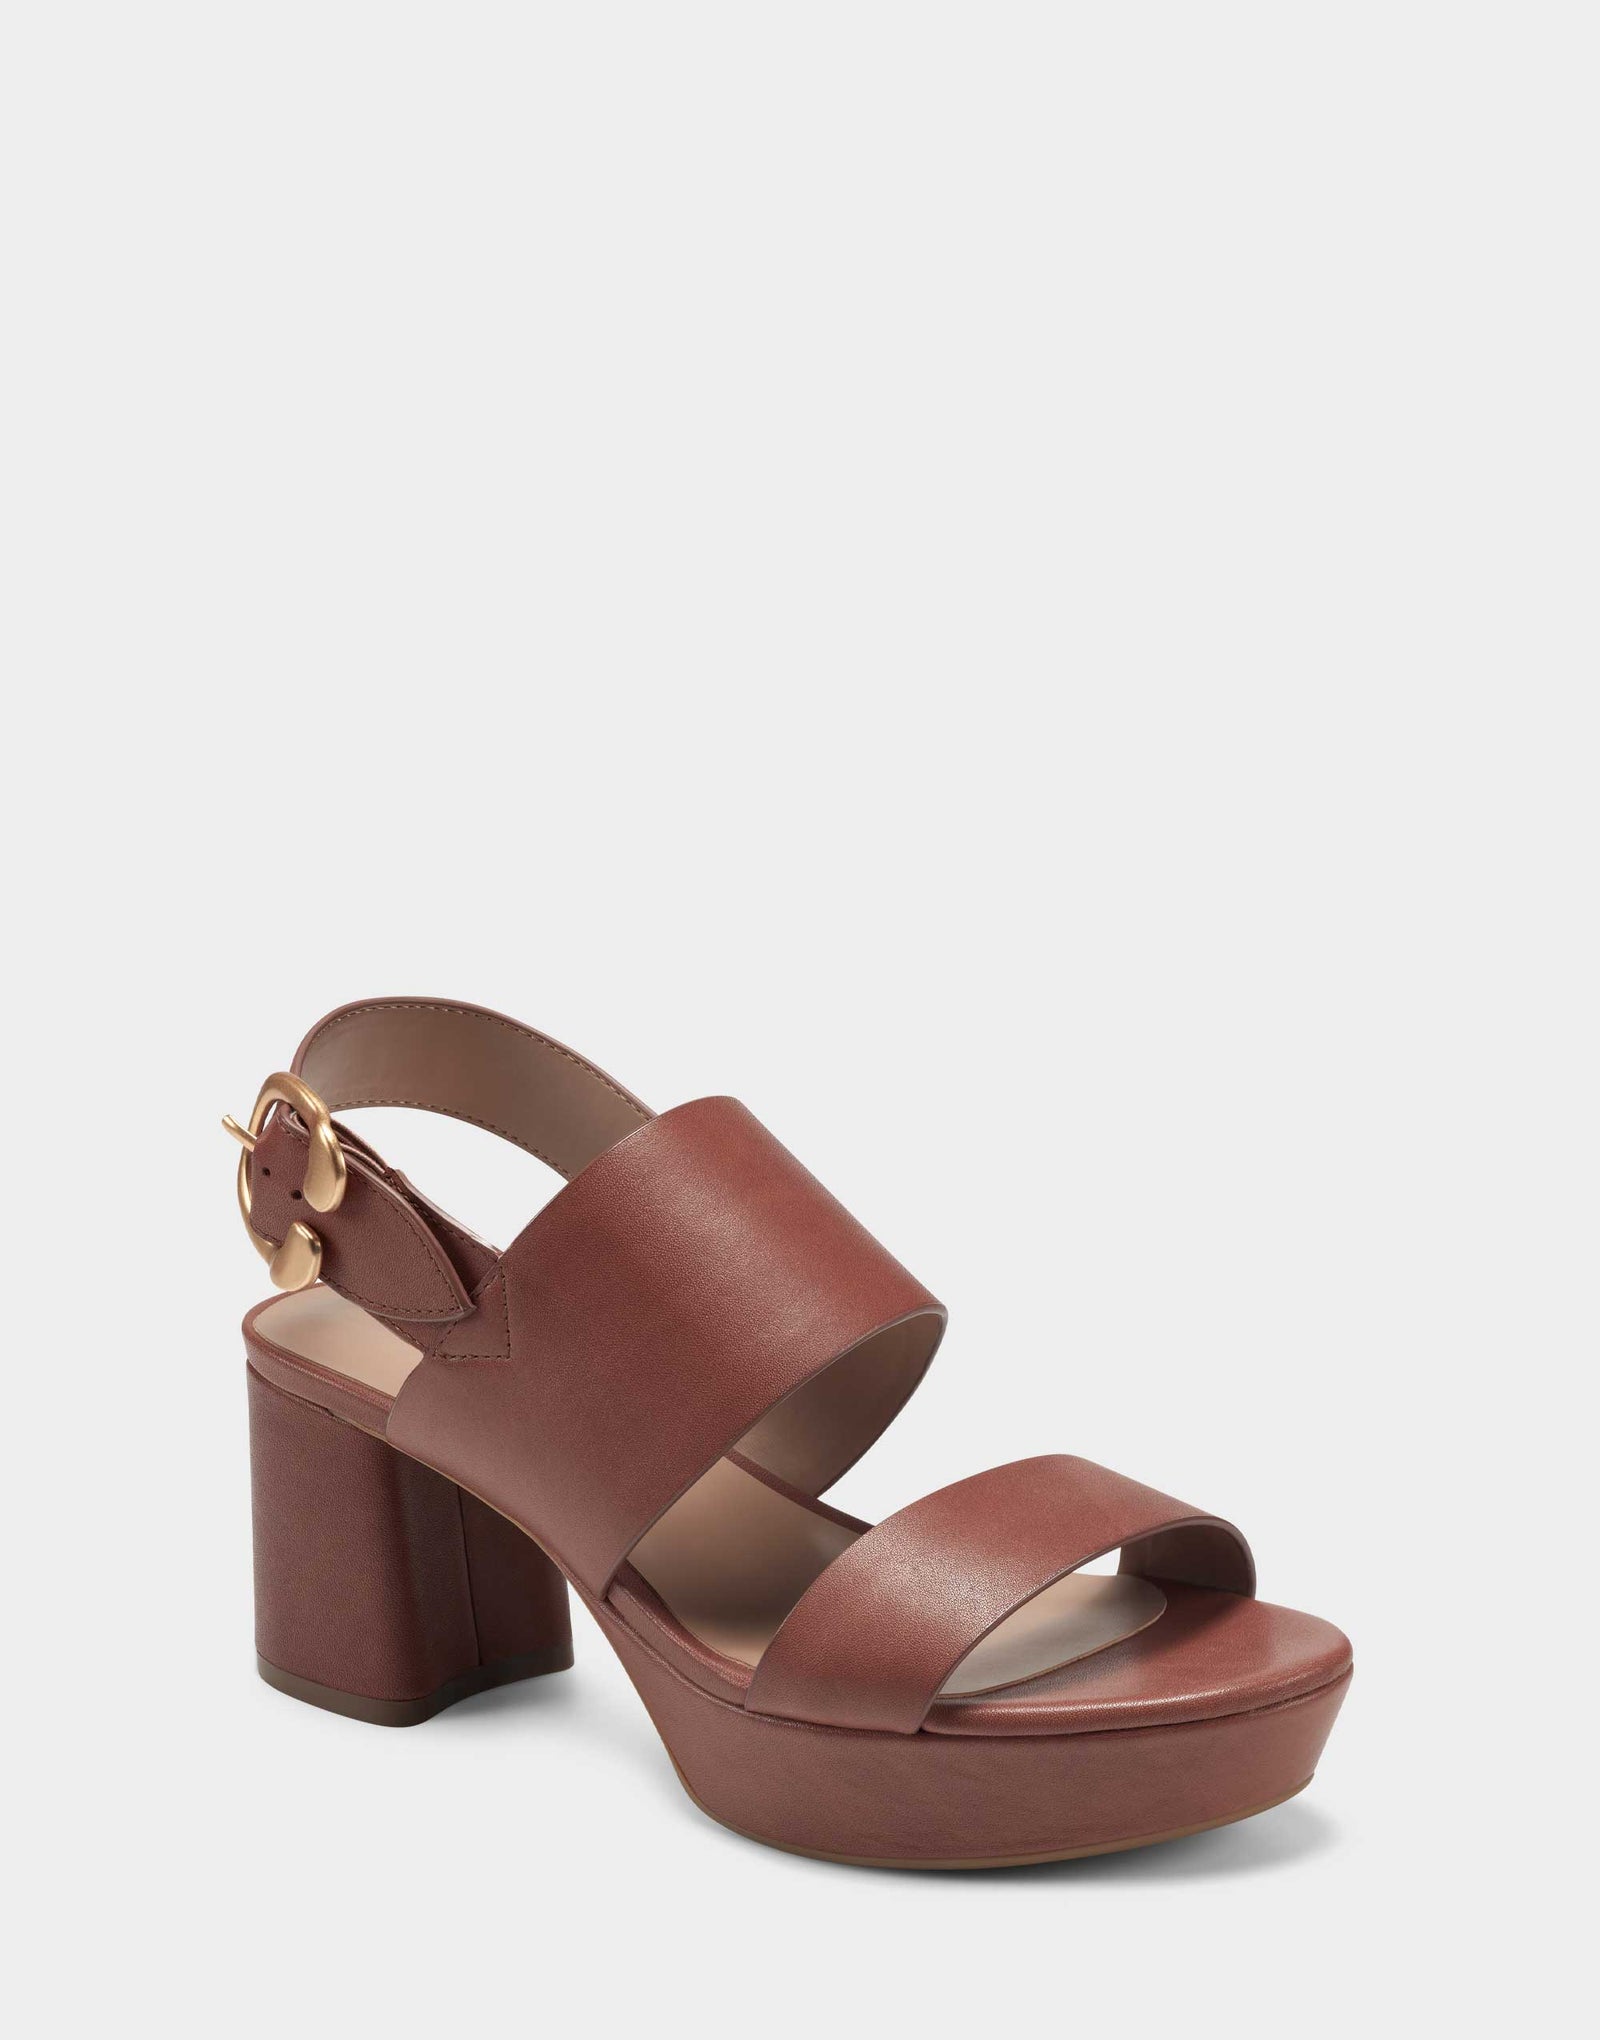 Women's Sandal in Light Brown